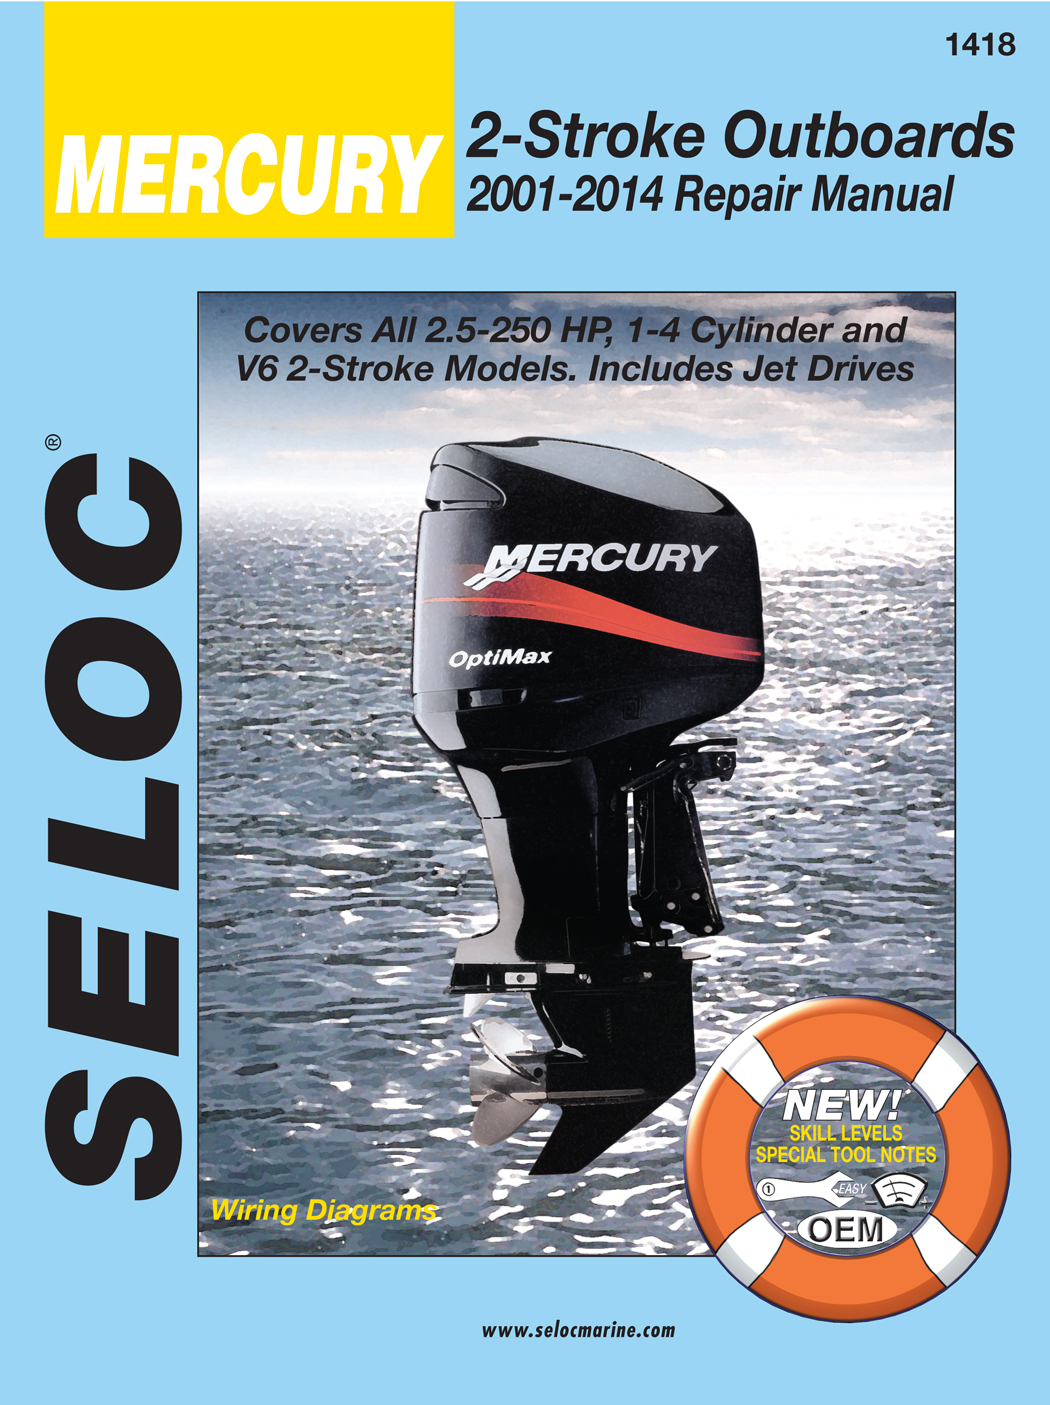 Seloc repair manual for Mercury 2-Stroke Outboards 2001-2005 models